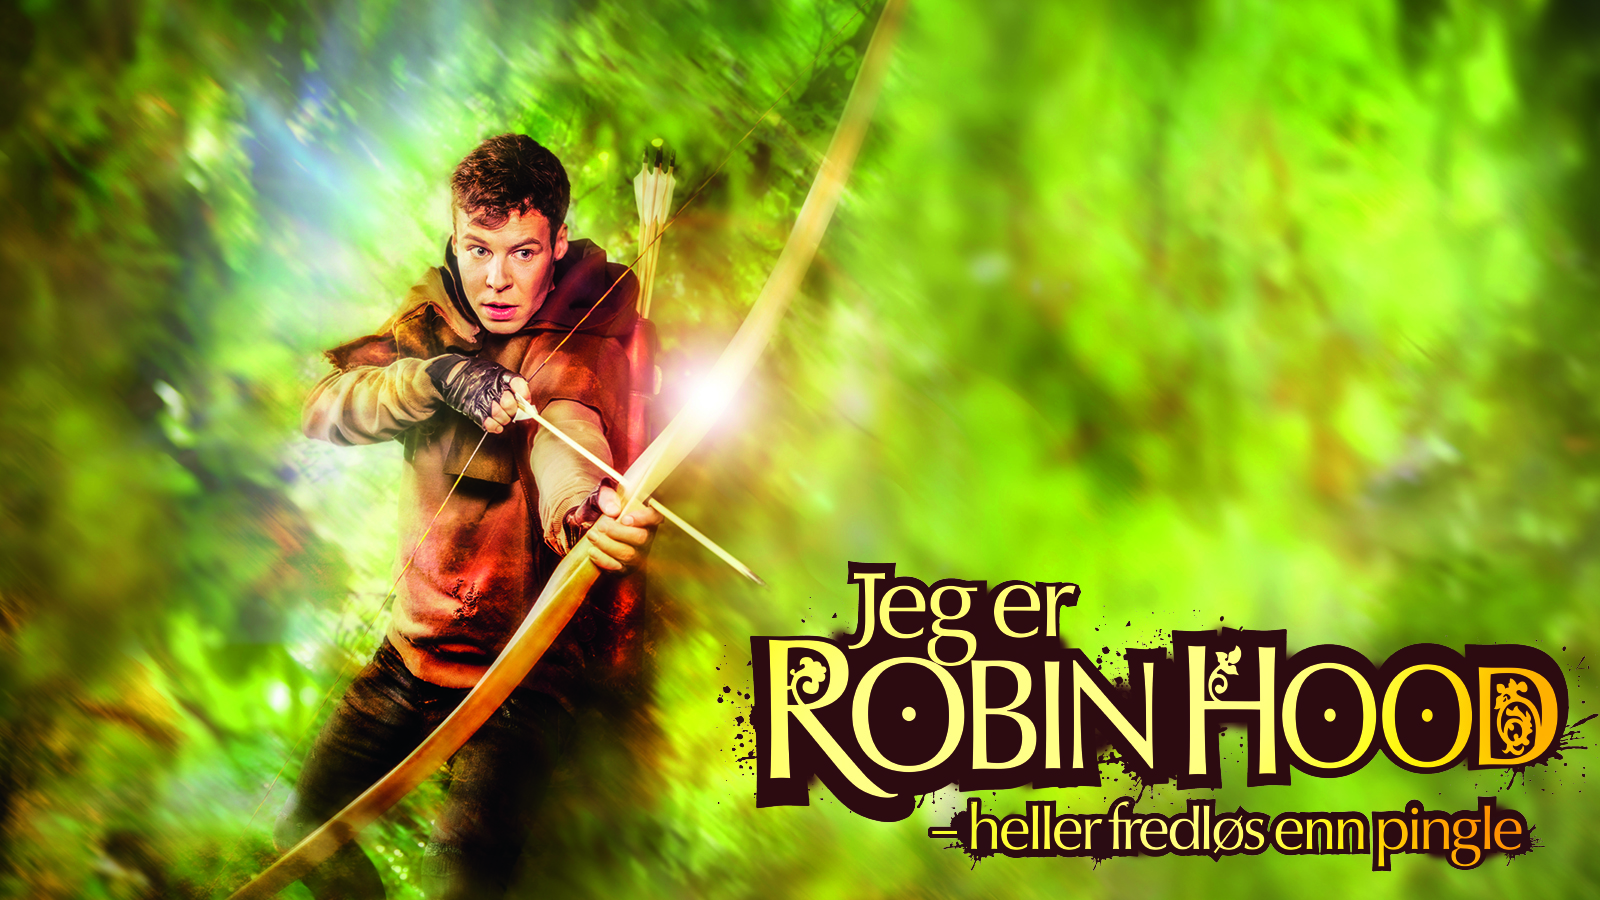 Jeg er Robin Hood plakat